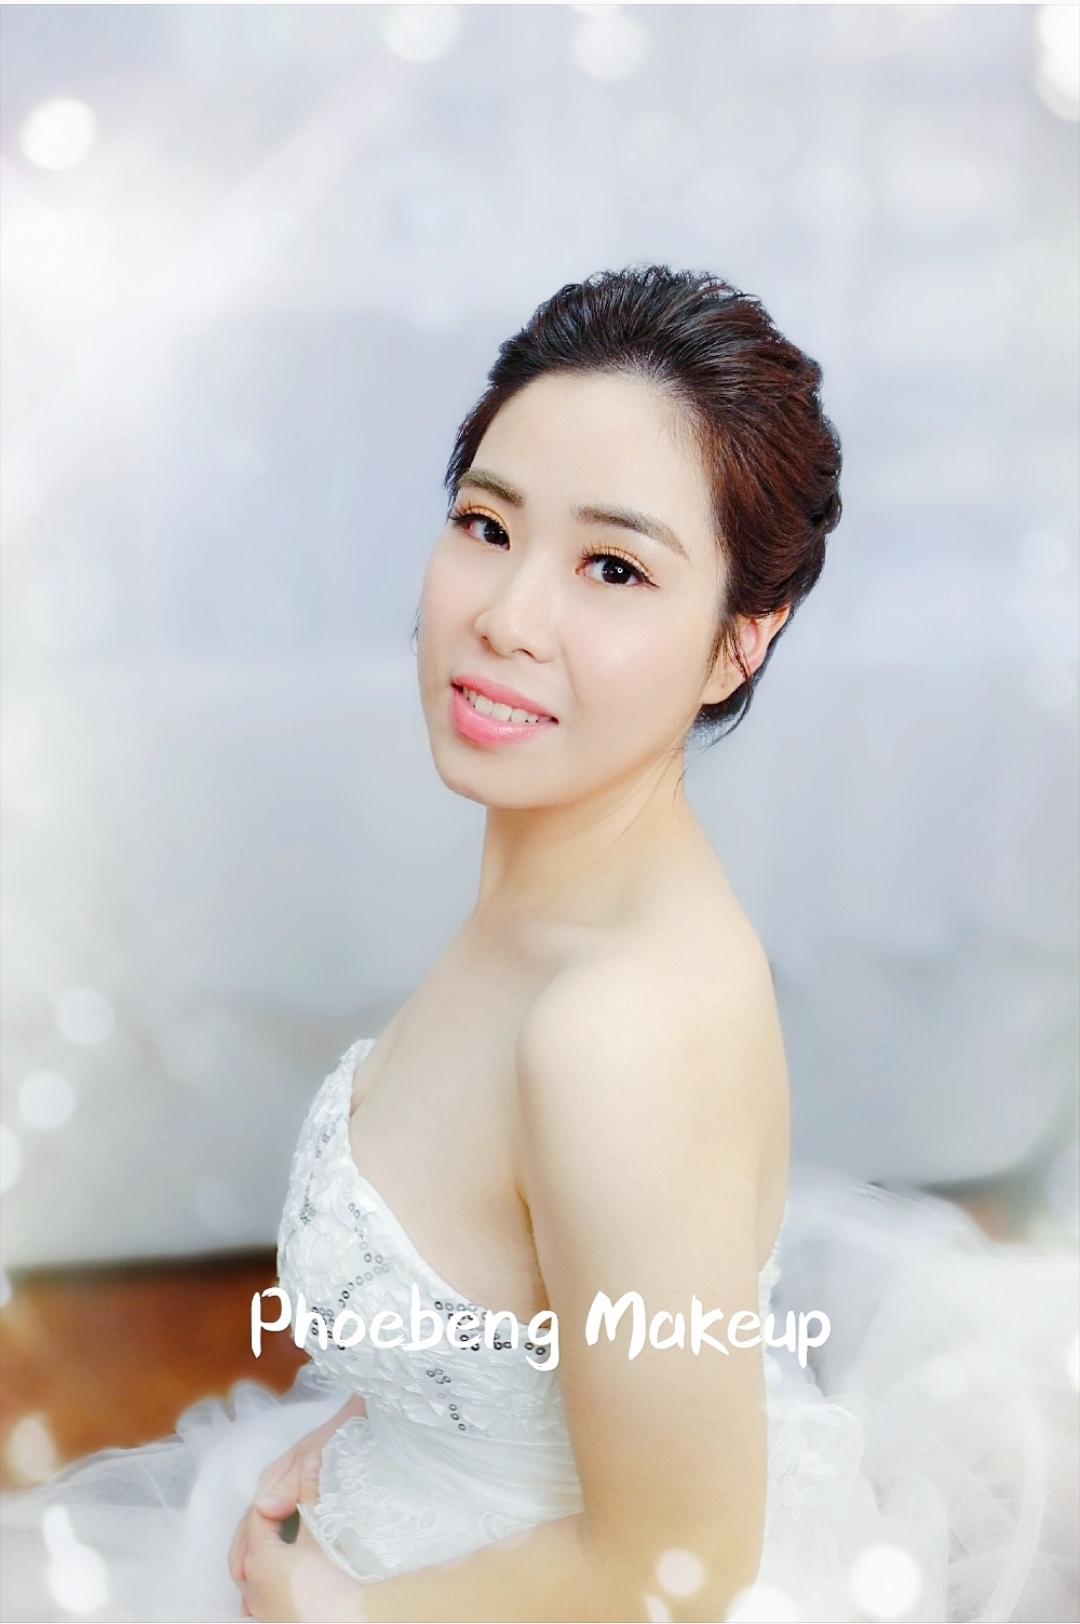 Phoebe Ng化妝師工作紀錄: 簡潔造型，清麗脫俗